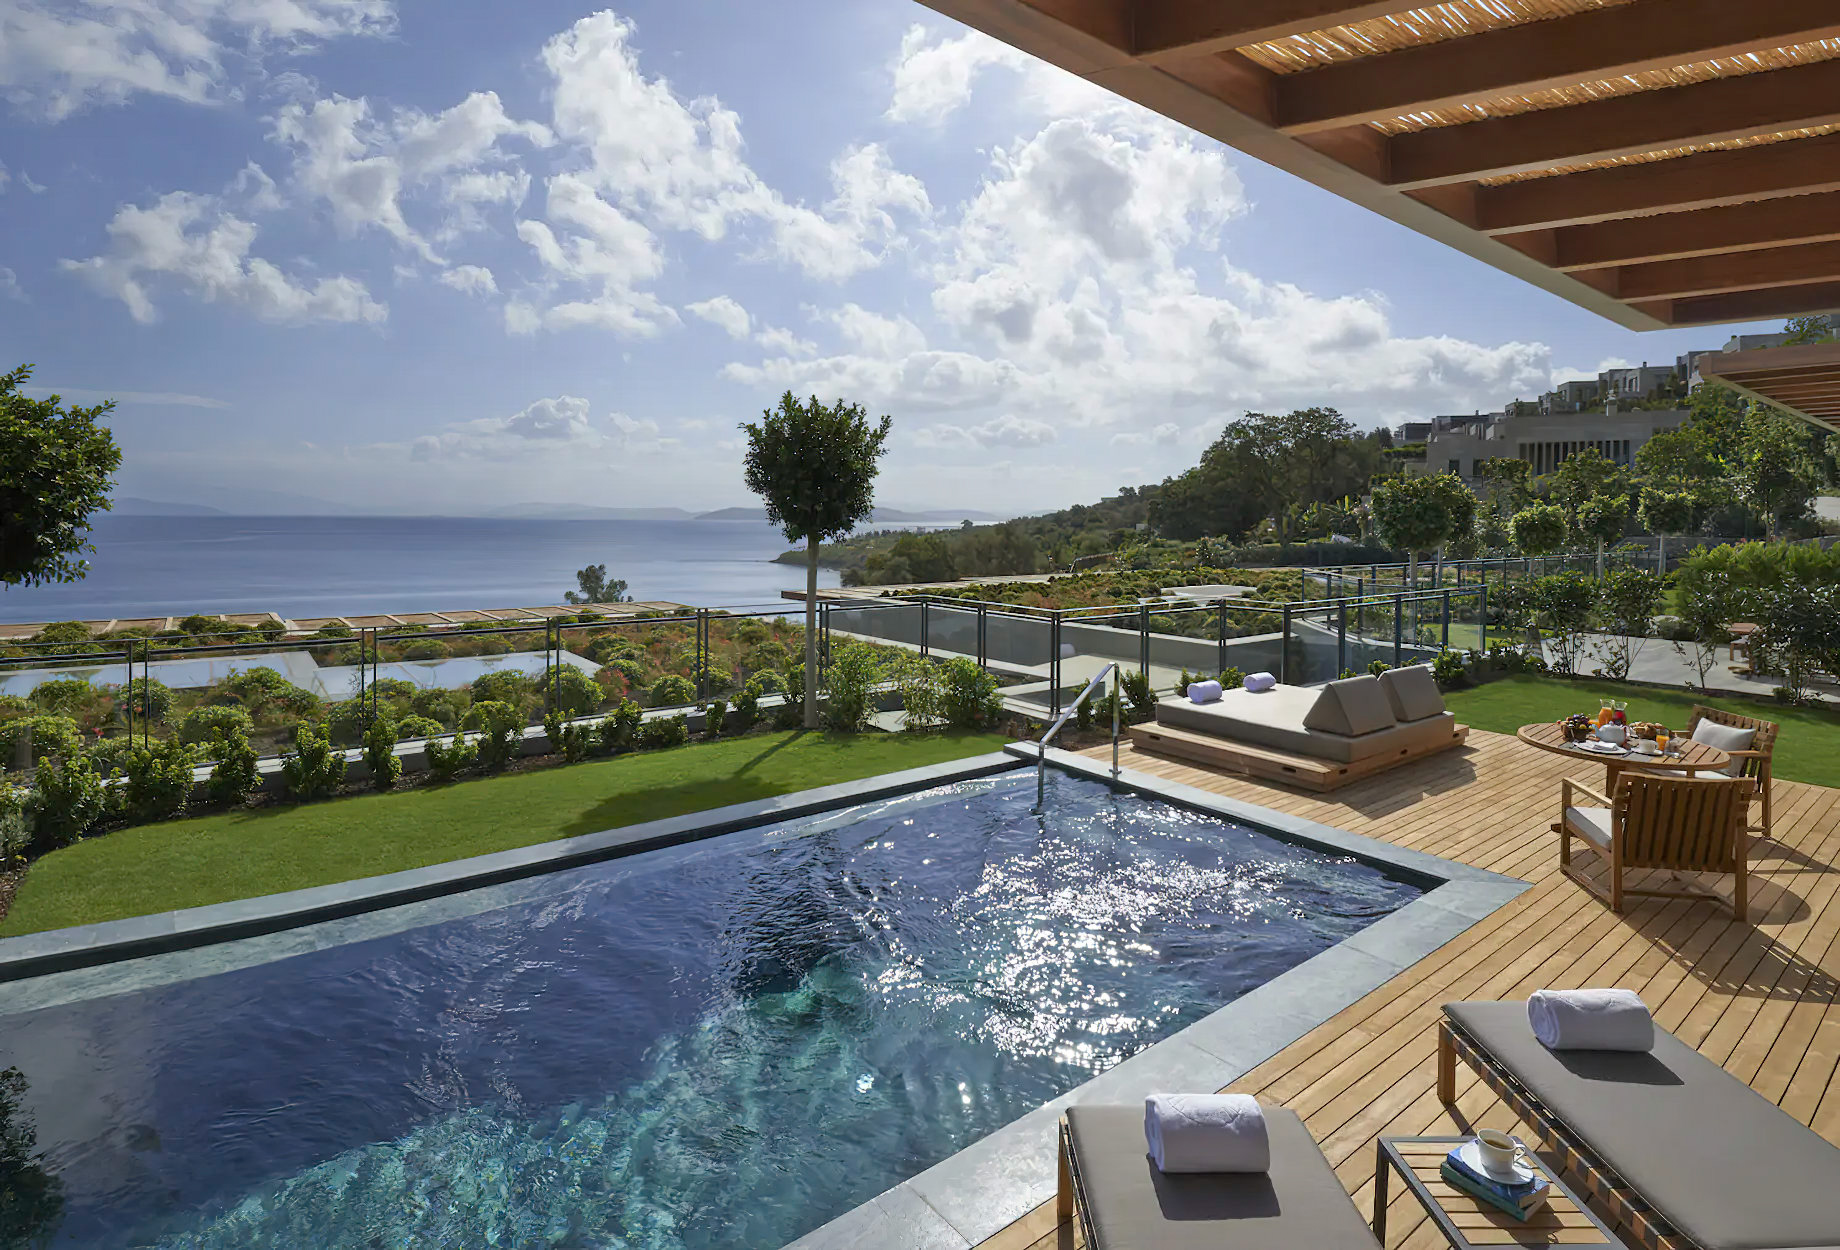 Mandarin Oriental, Bodrum Hotel – Bodrum, Turkey – Bodrum Guest Suite Sea View Private Pool Terrace